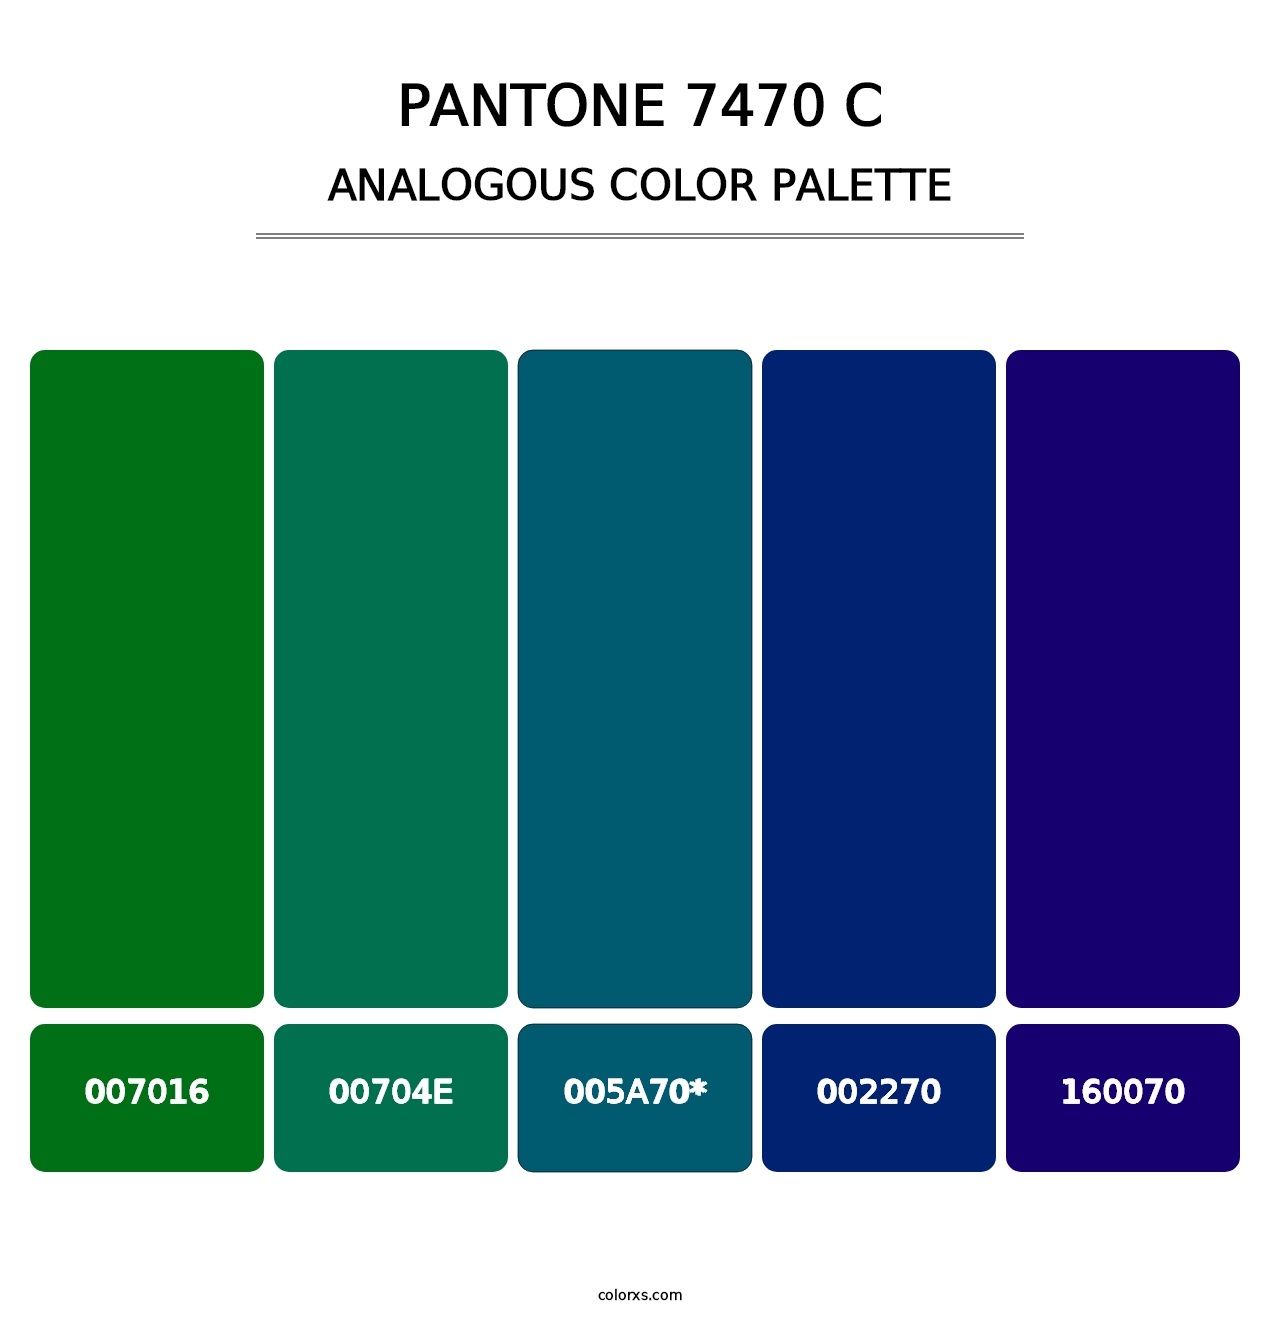 PANTONE 7470 C - Analogous Color Palette